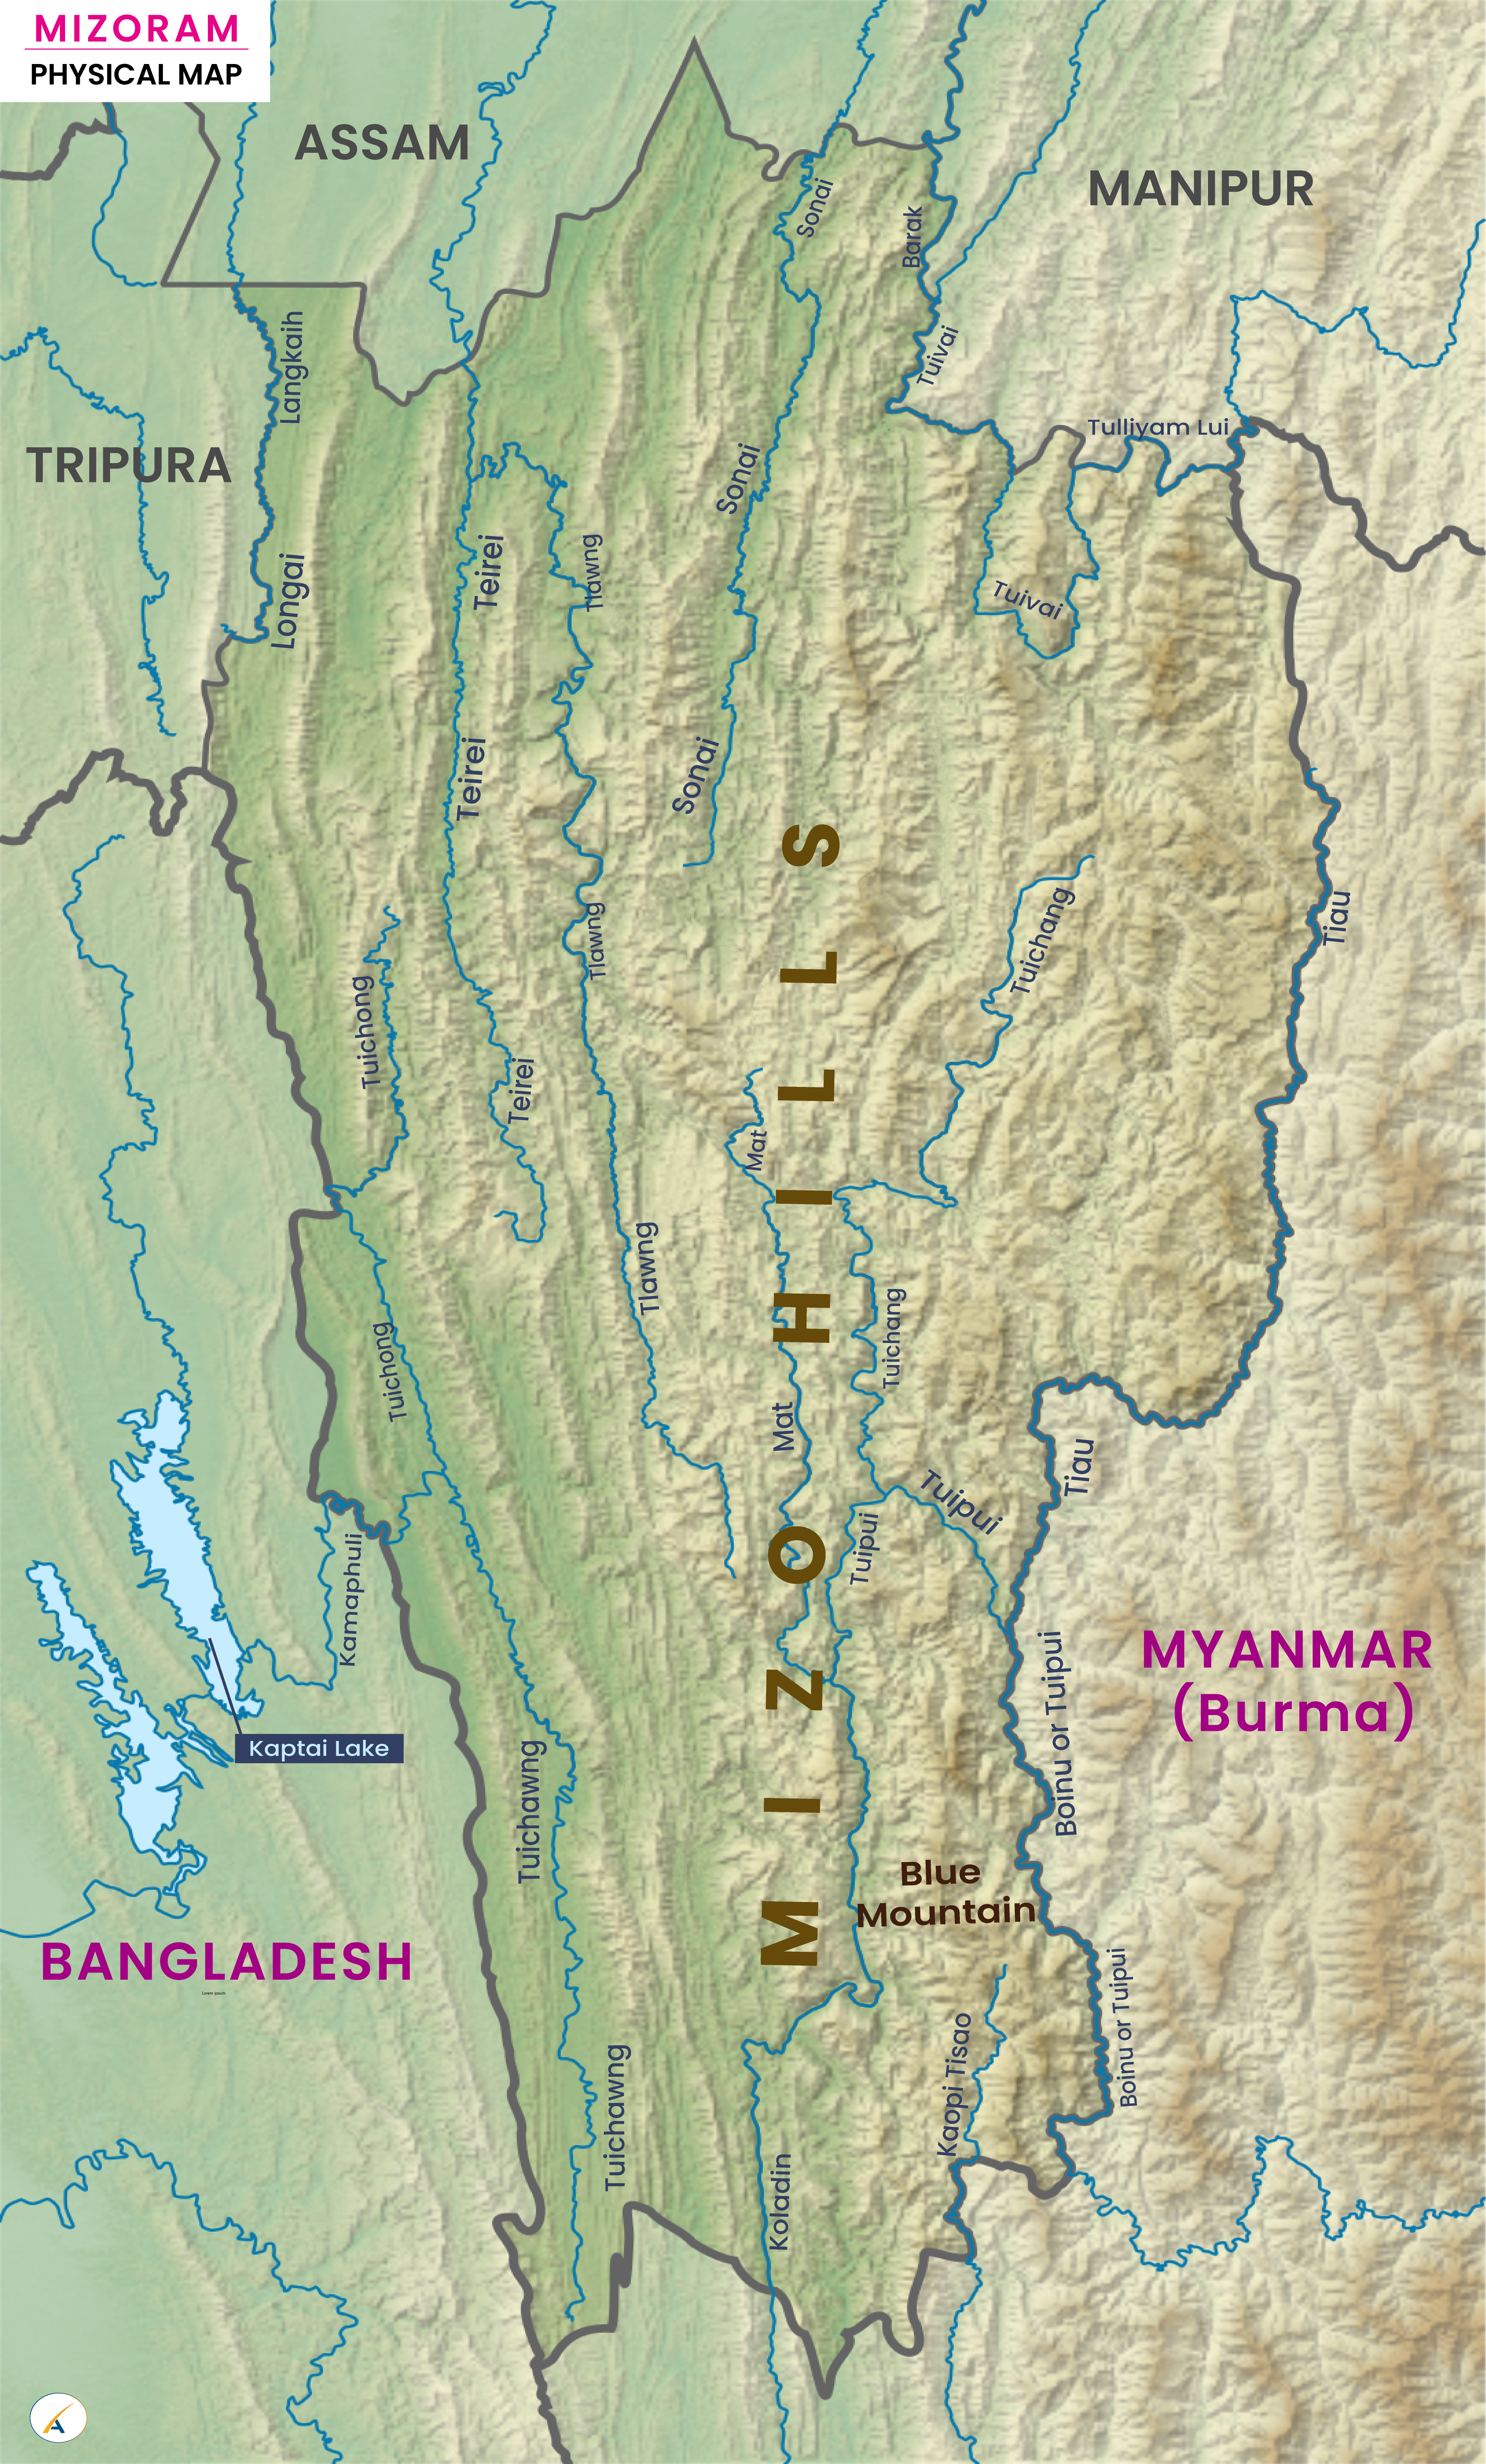 Mizoram Physical Map